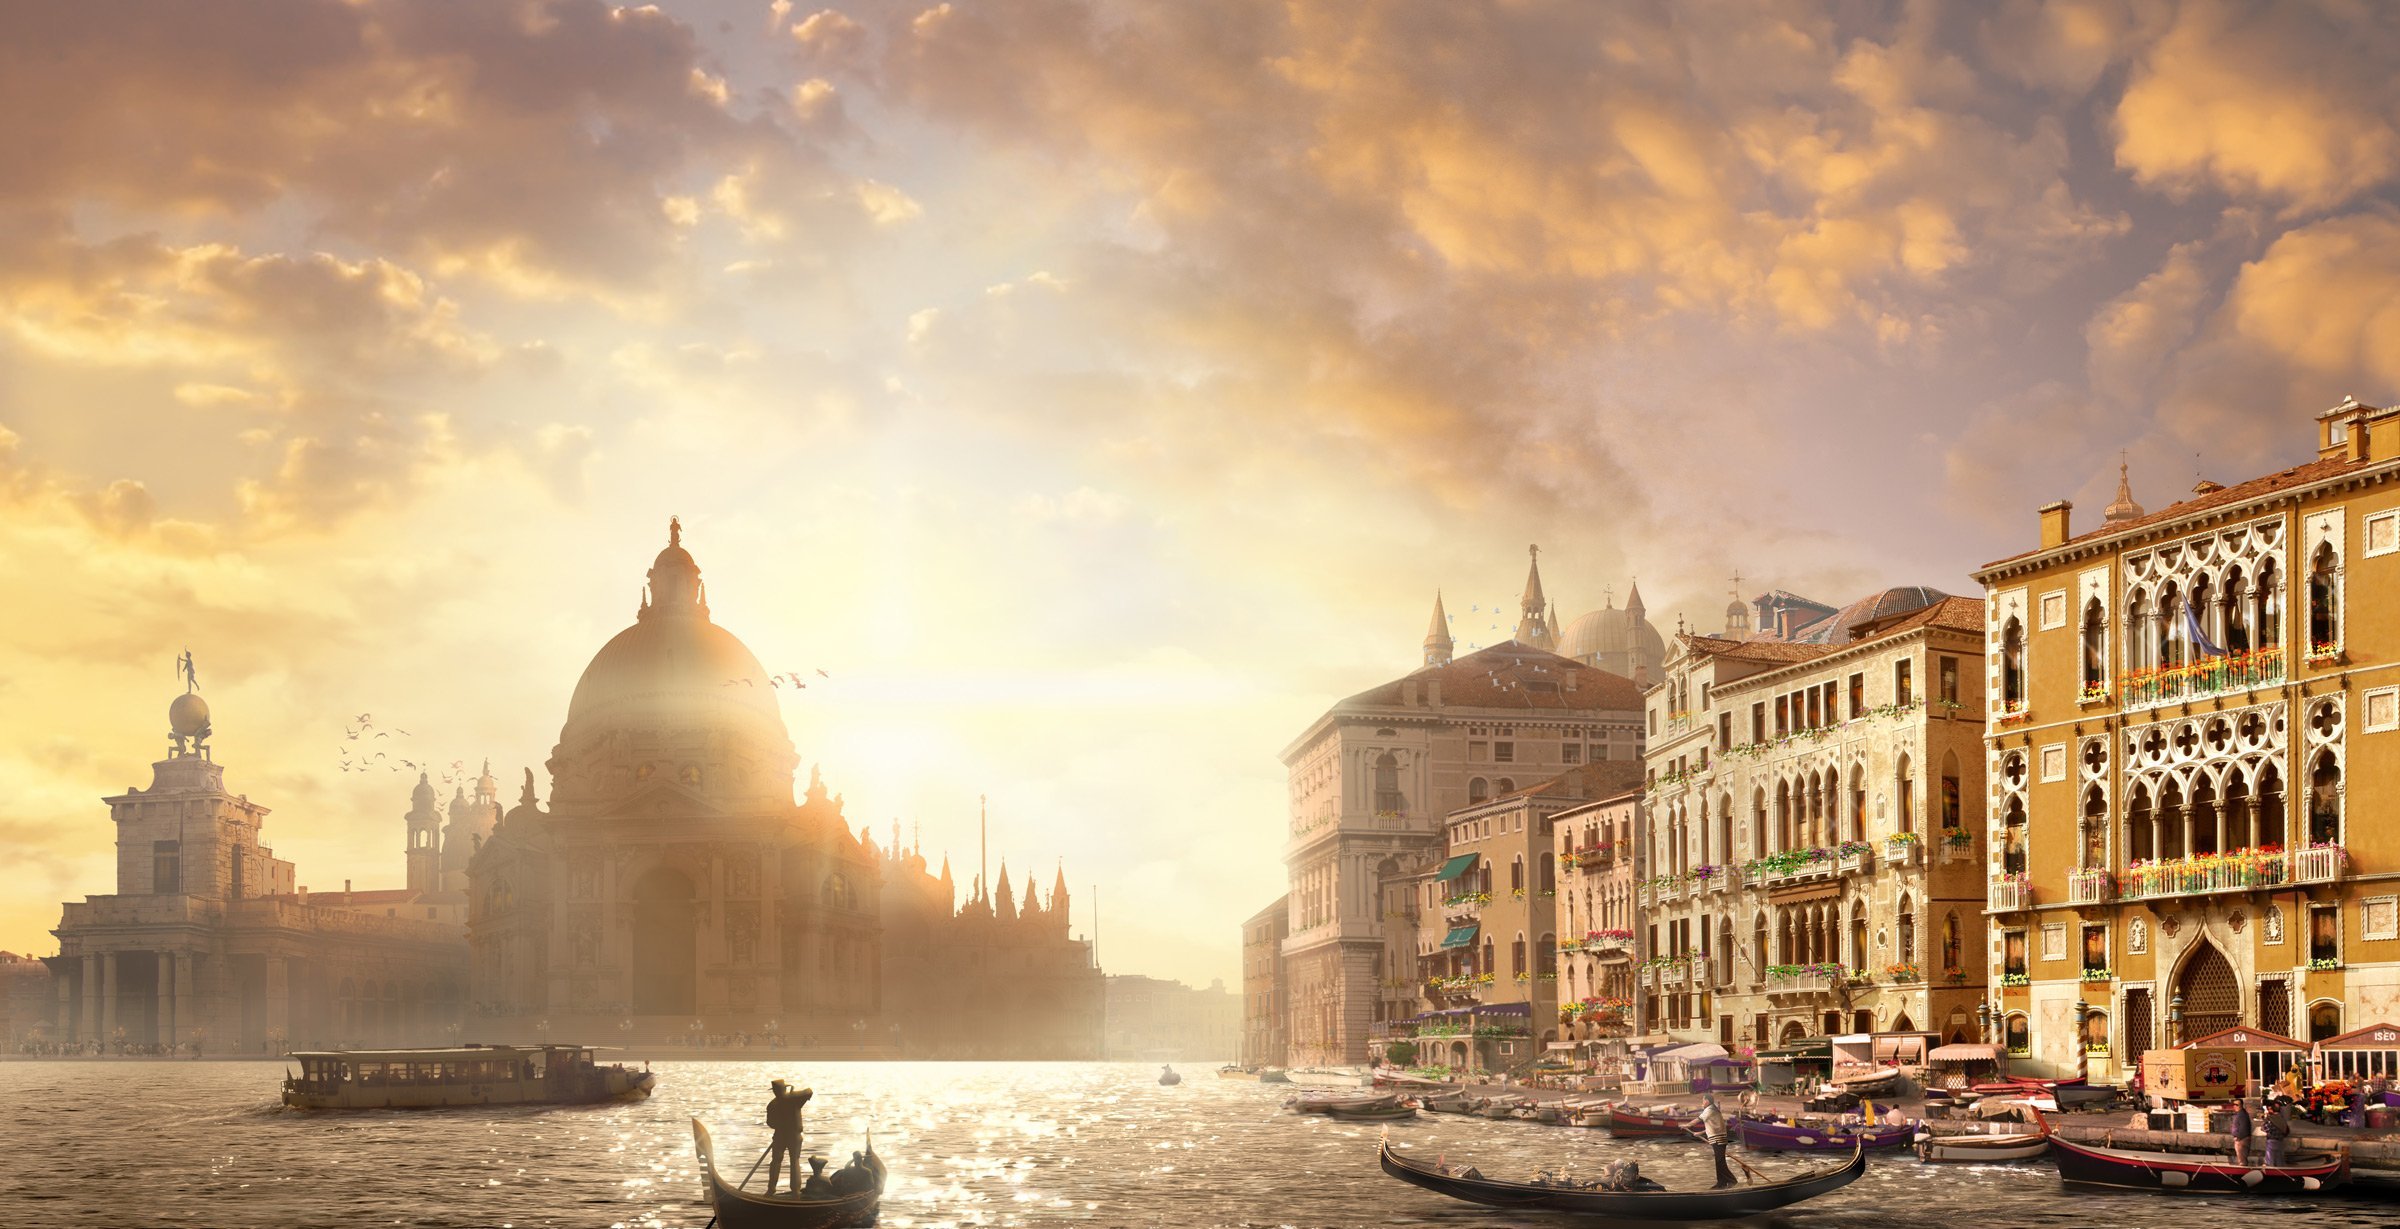 Достопримечательности венеции: рейтинг 16 лучших достопримечательностей, которые вы должны посмотреть